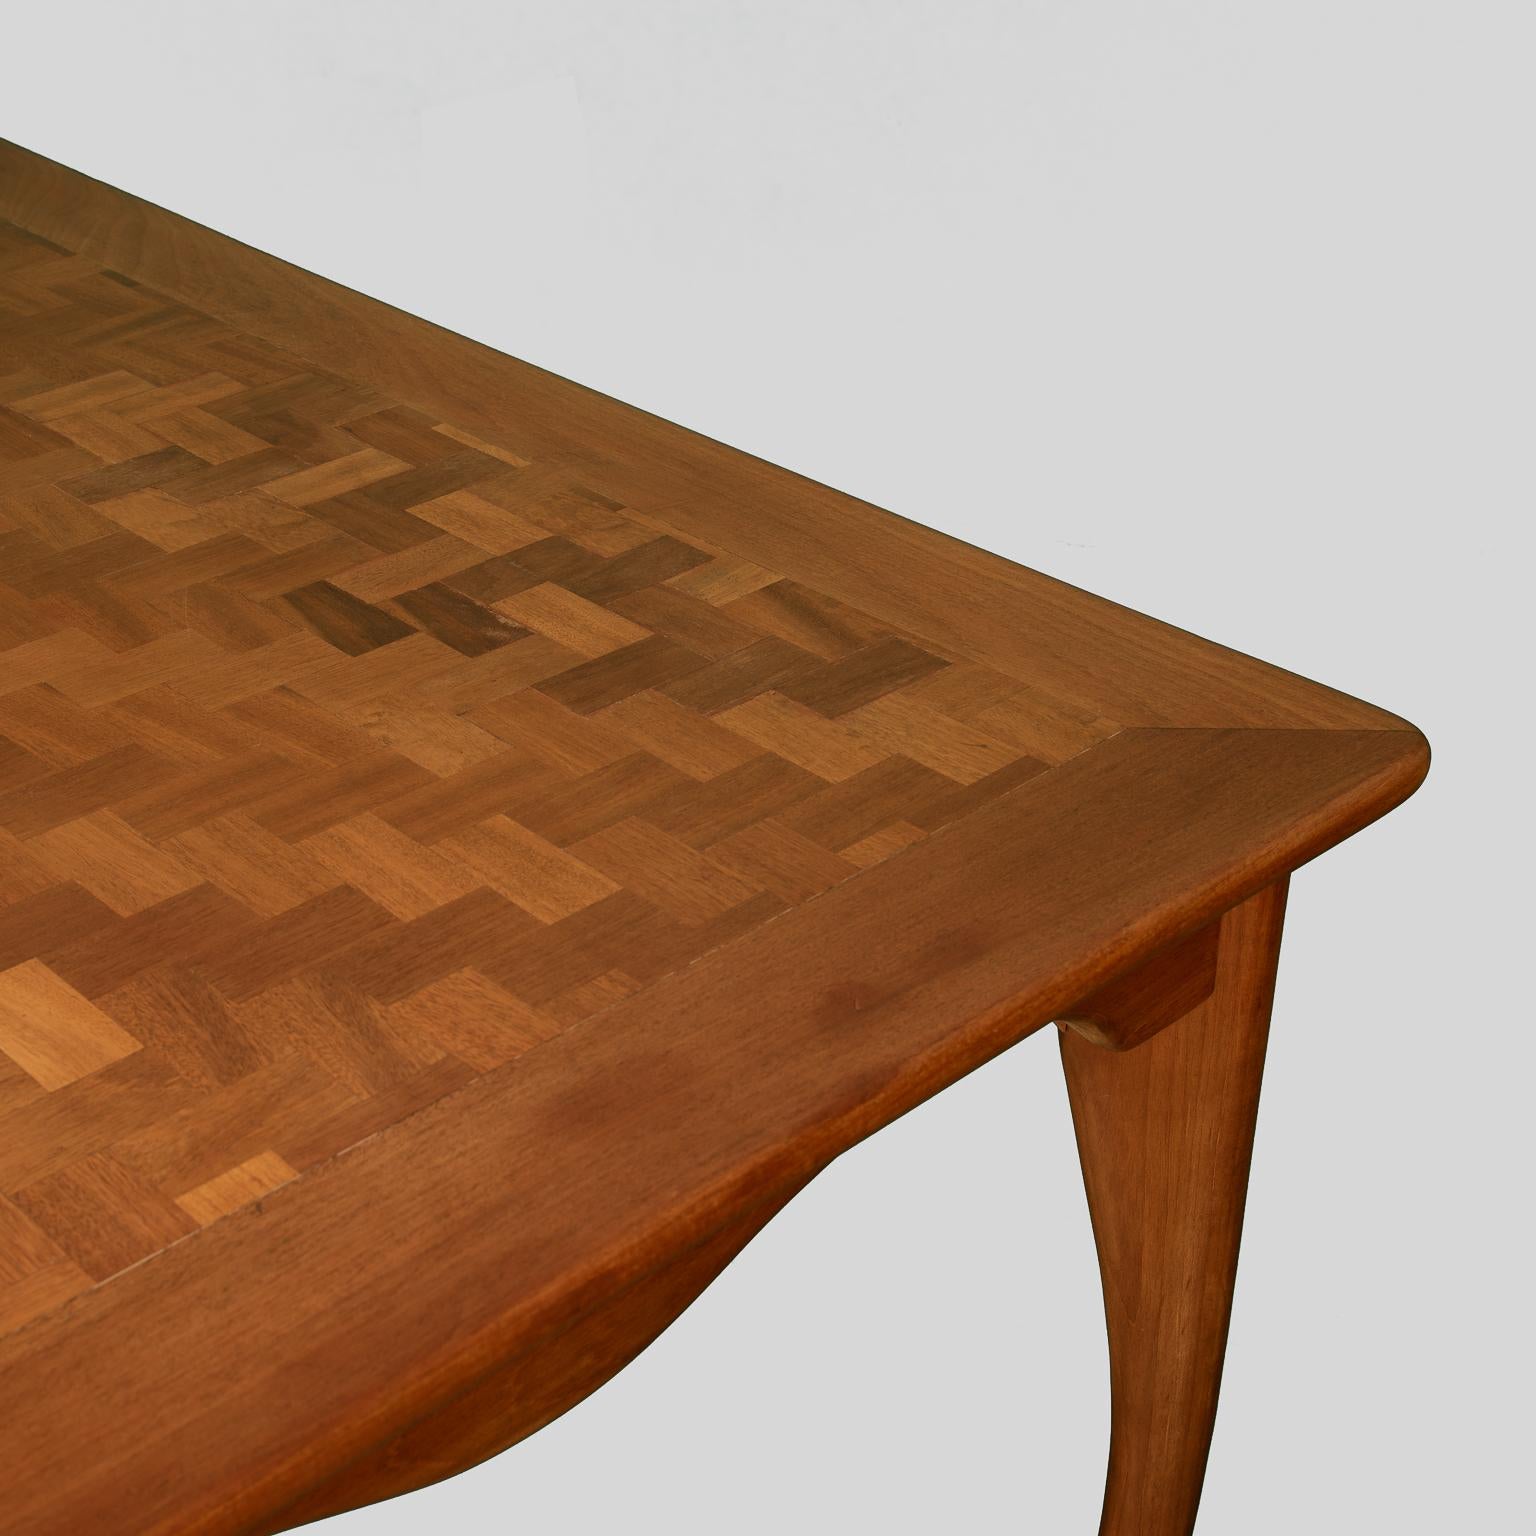 Modern Rectangular Table Don Shoemaker For Sale